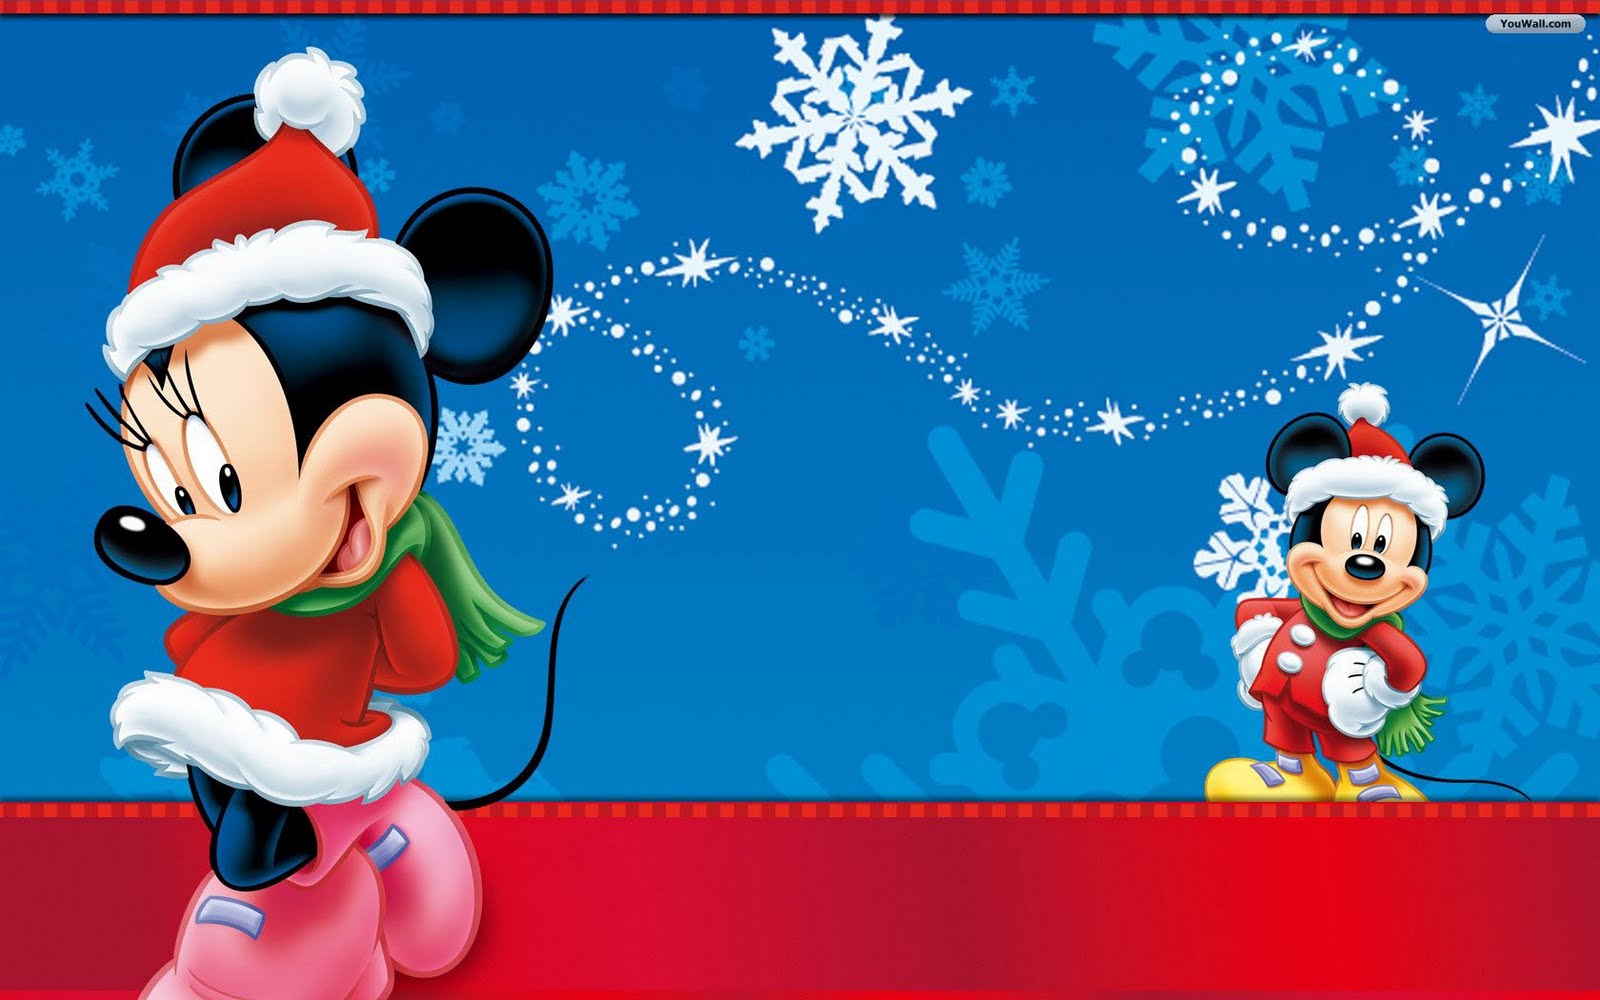  Christmas adorable Disney Christmas wallpapers for your computer